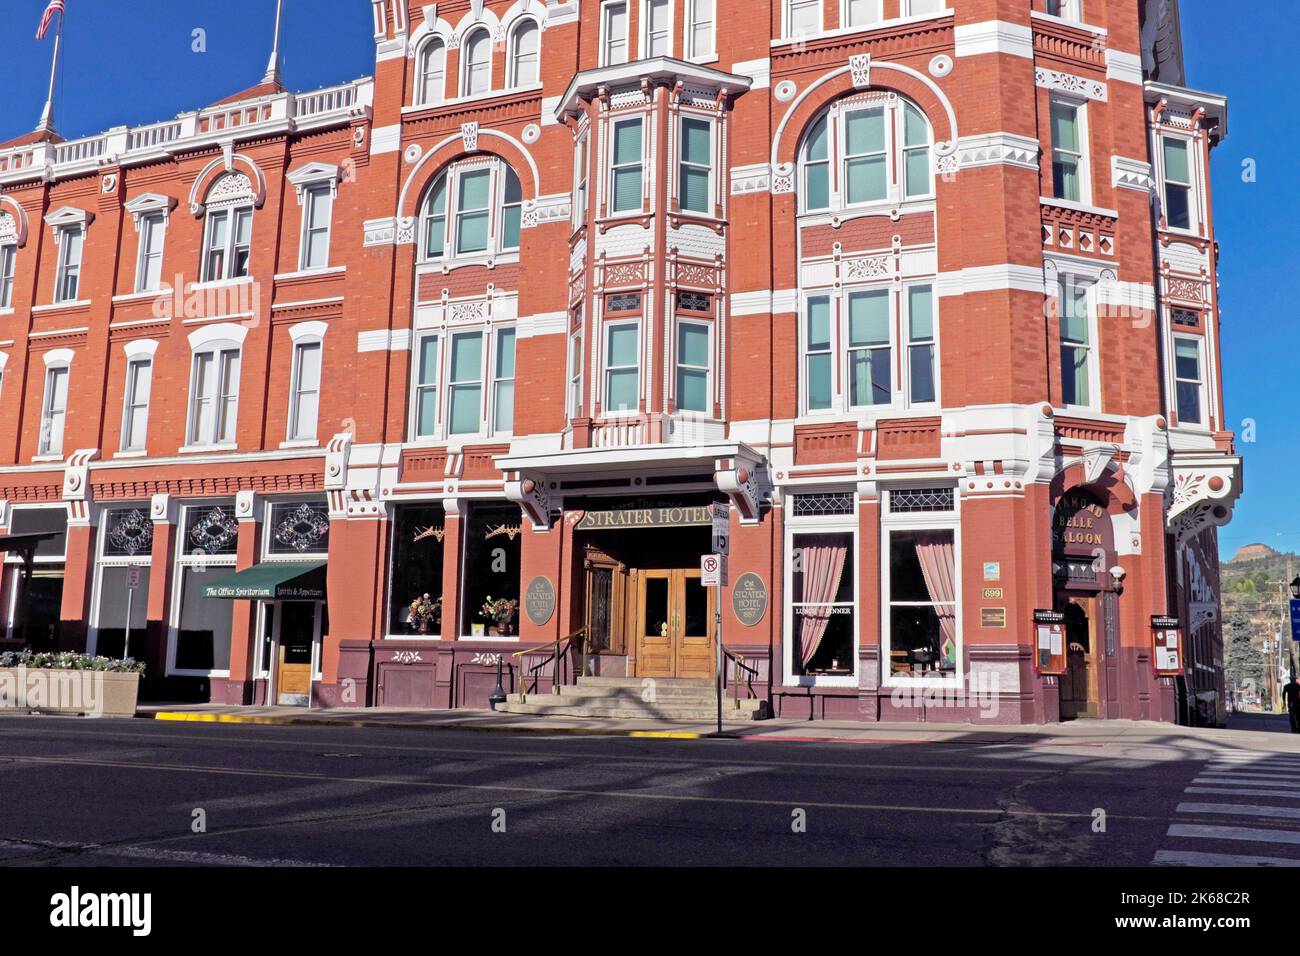 Le célèbre hôtel Strater, ouvert en 1887, entrée principale sur main Avenue dans le quartier historique du centre-ville de Durango, Colorado, Etats-Unis. Banque D'Images